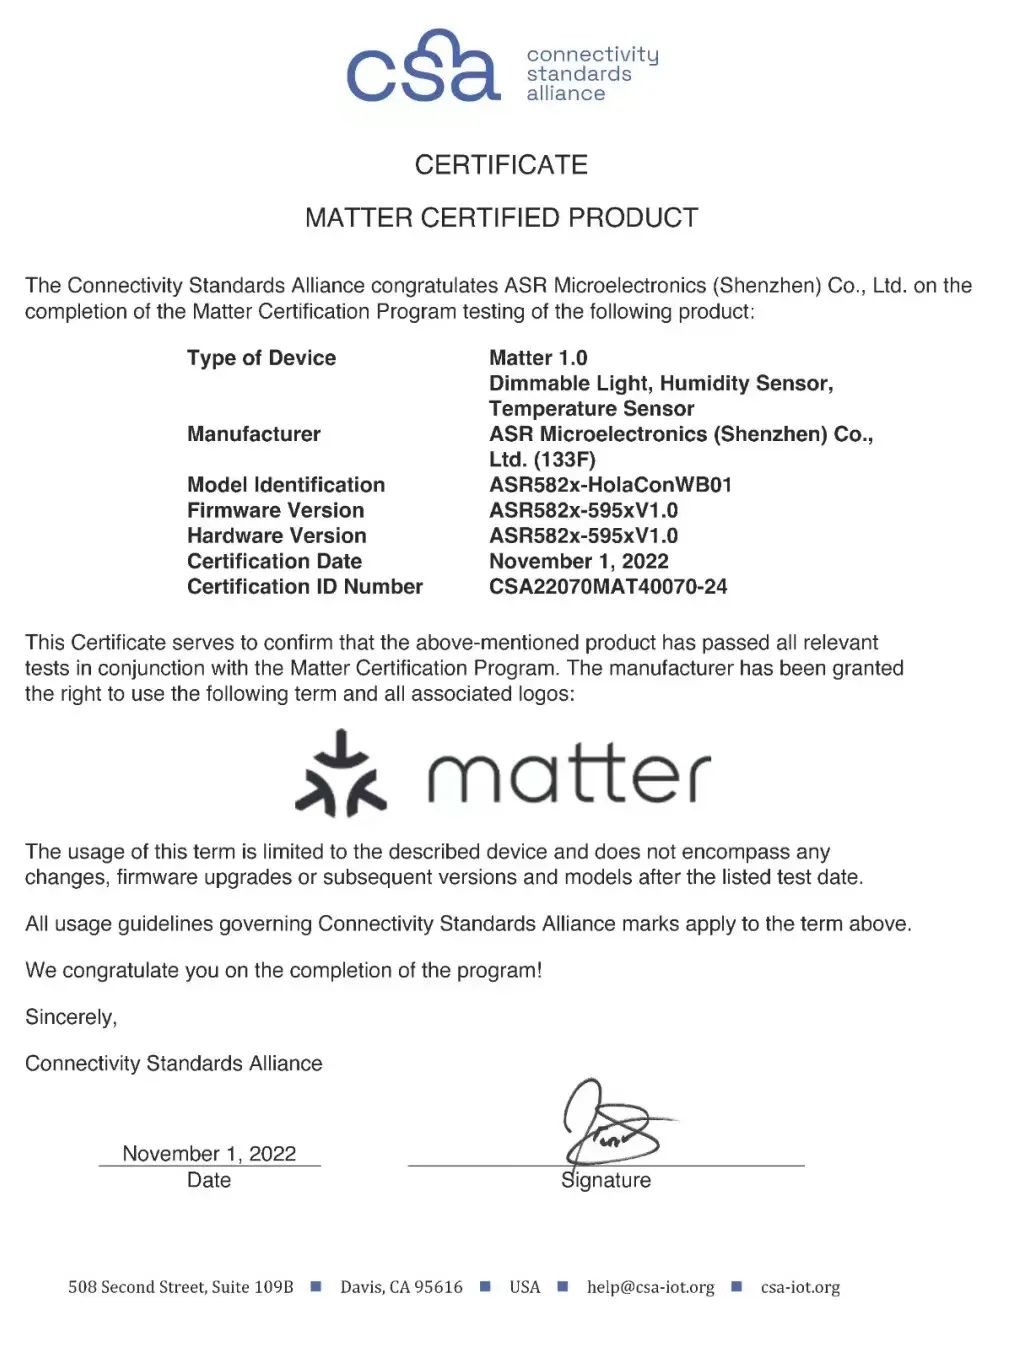 翱捷科技ASR582X系列芯片首批通过 Matter 1.0 认证